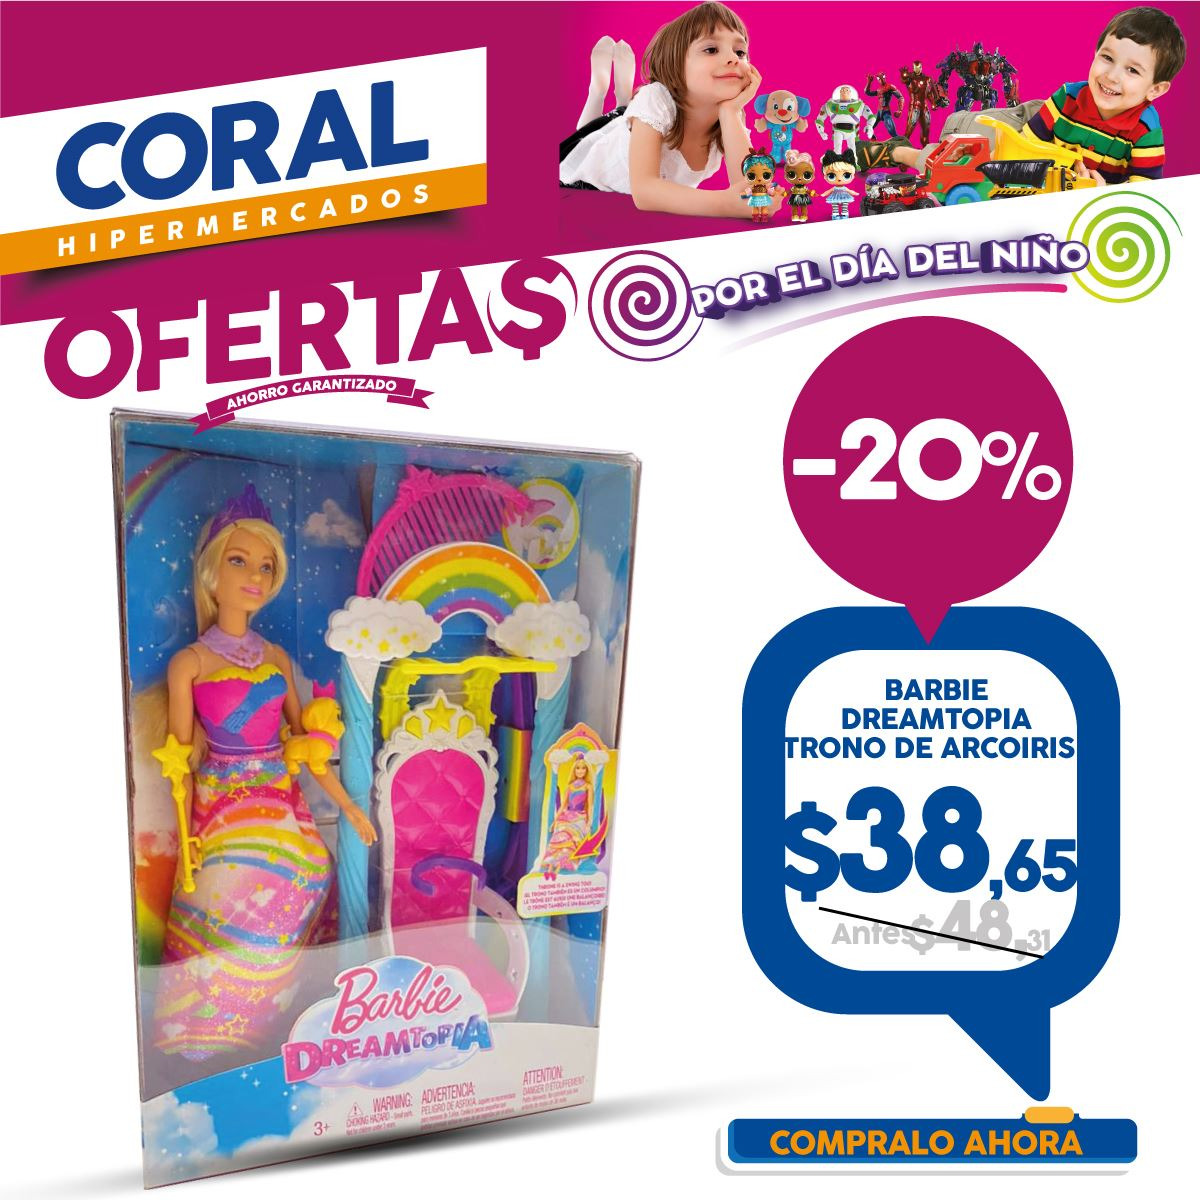 Catálogo Coral Hipermercados - 15.5.2021 - 11.6.2021.